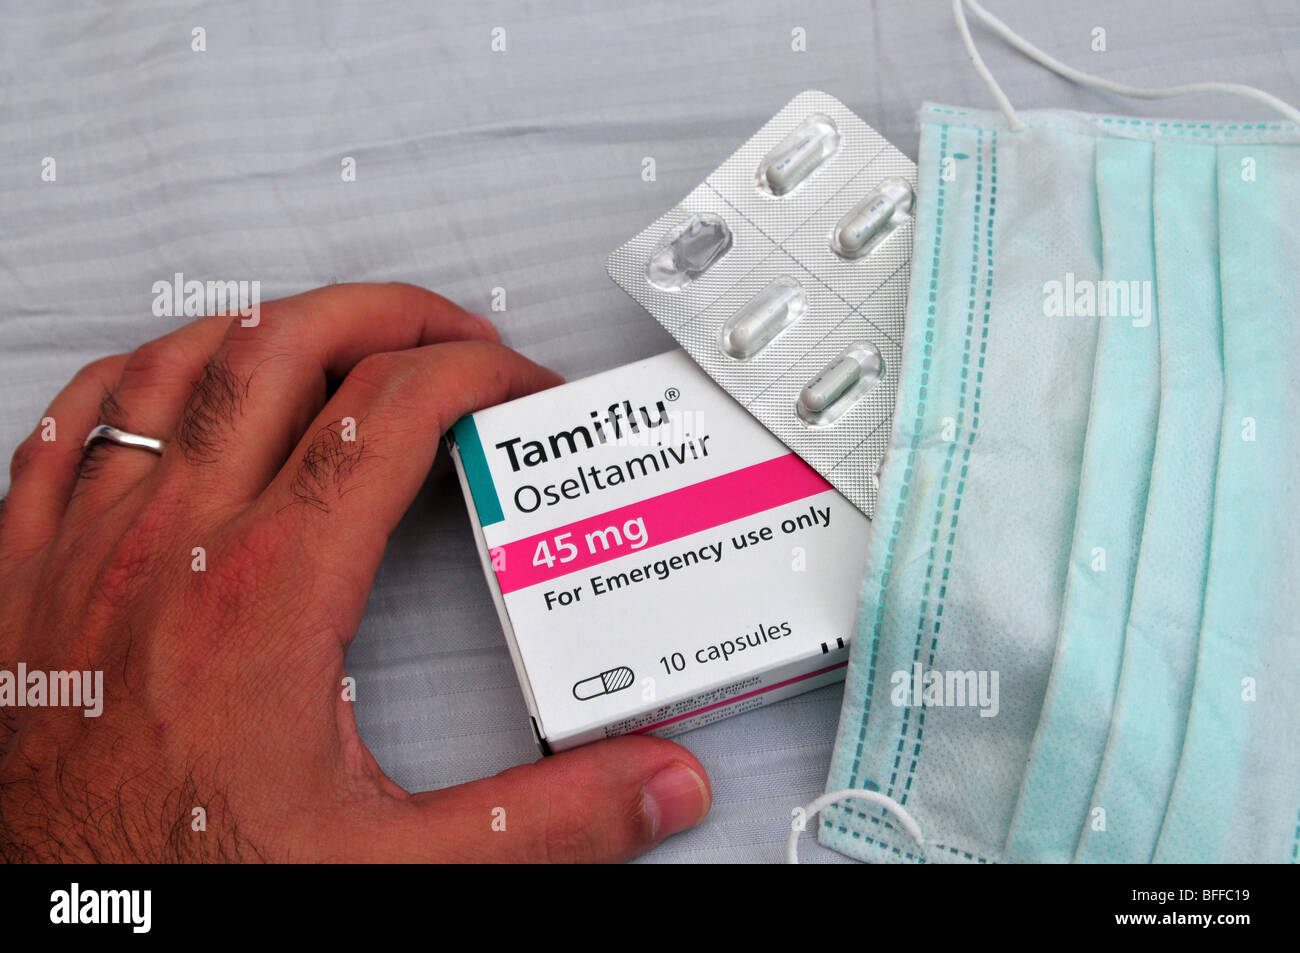 Un medico di maschera facciale e una confezione di Tamiflu compresse contro l'influenza suina, 30 ottobre 2009. Foto Stock